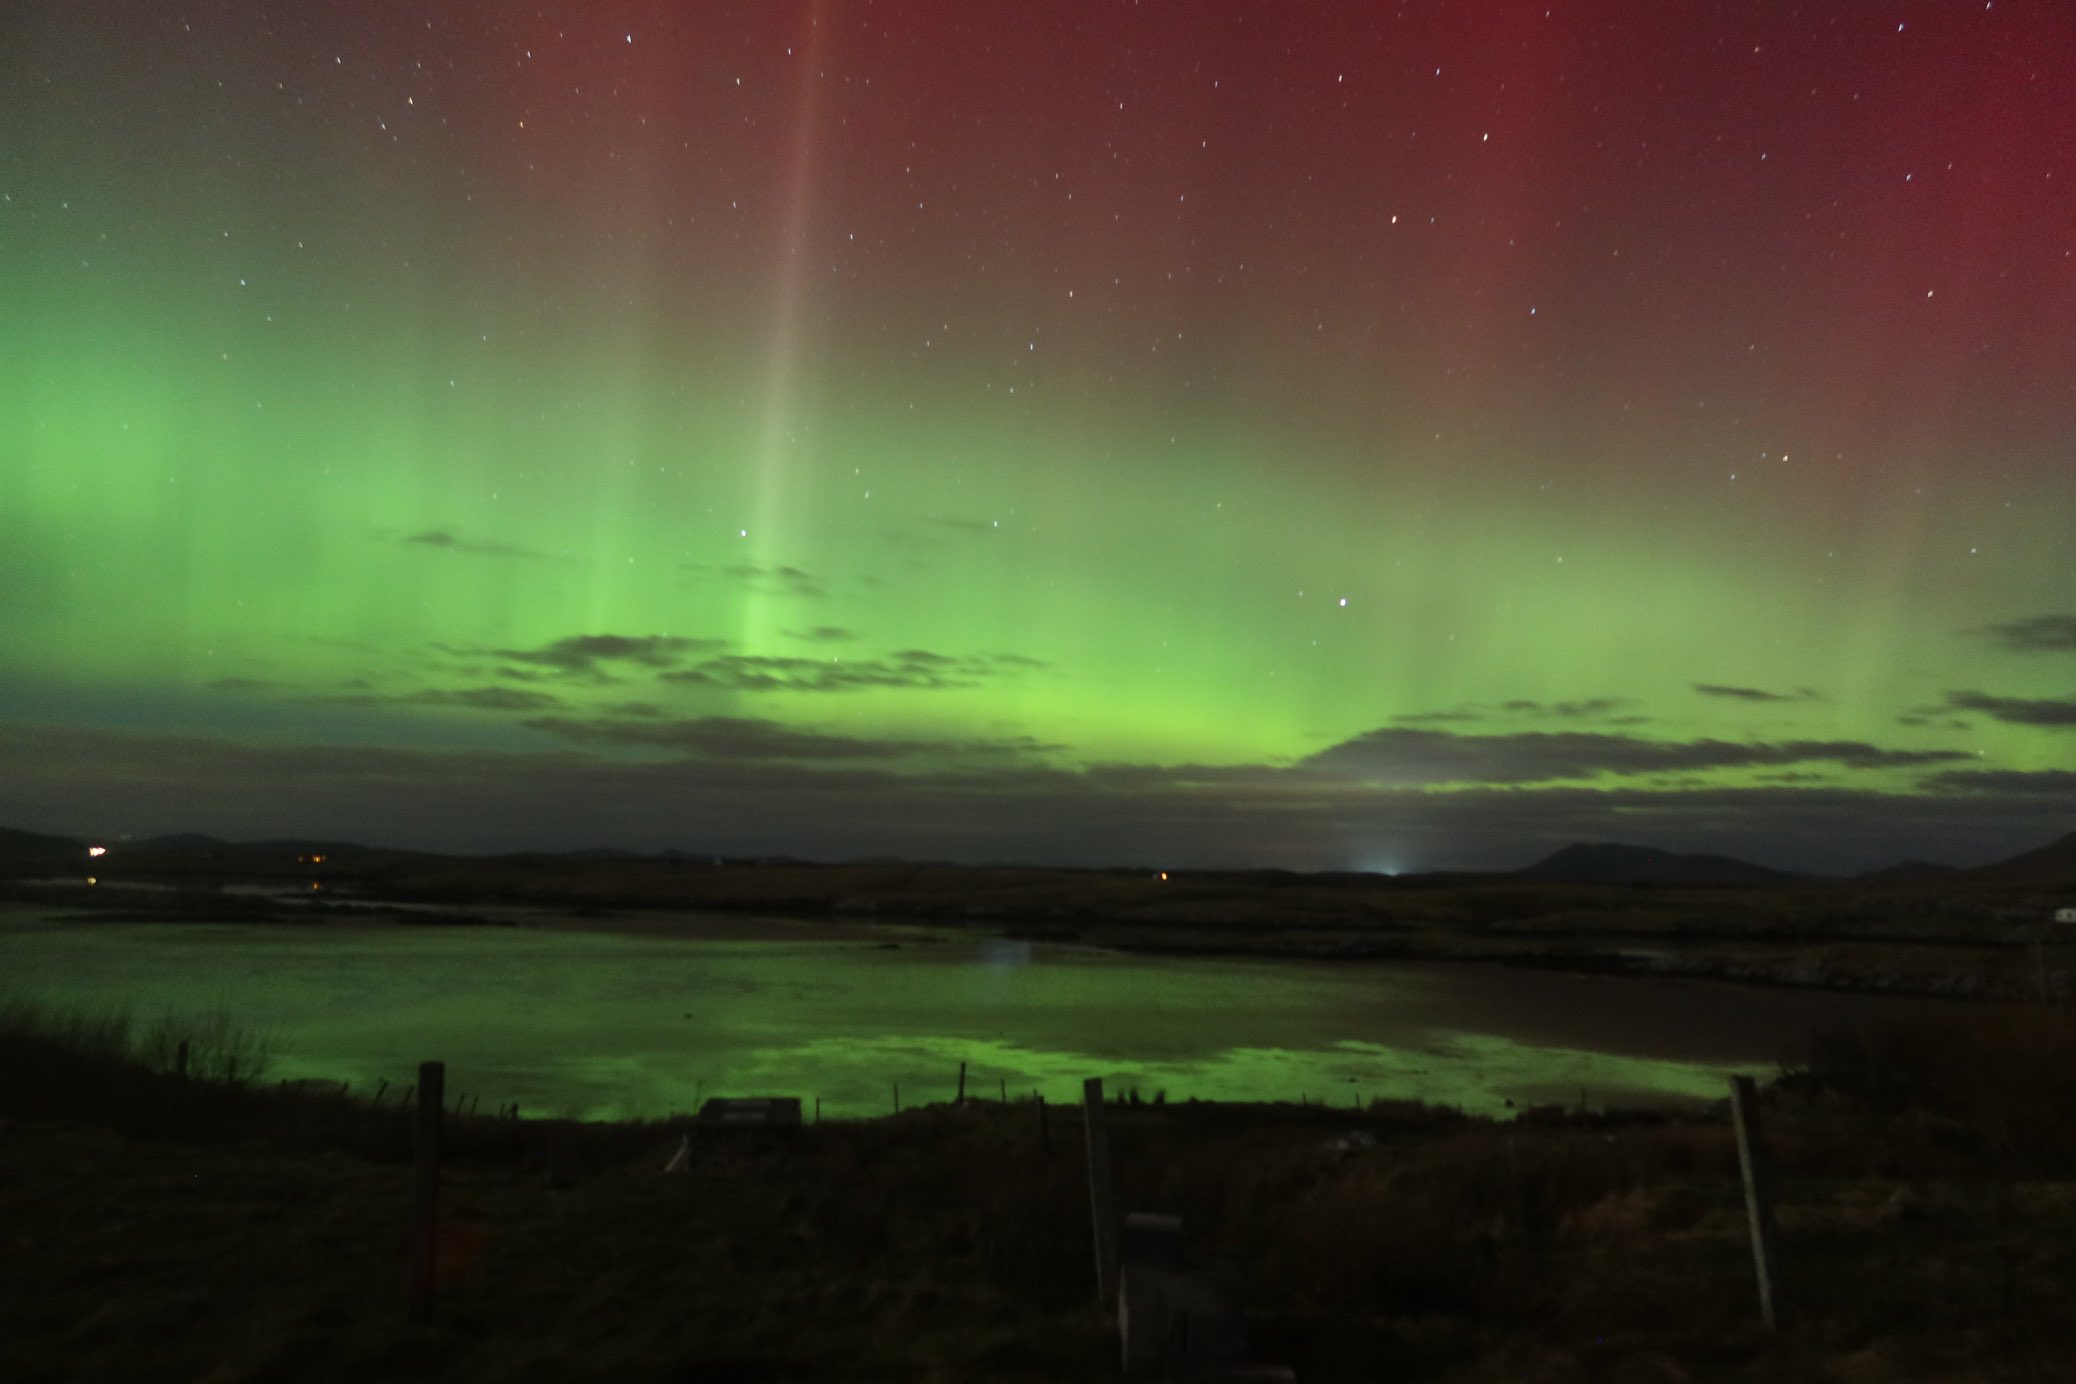 Imagini spectaculoase cu aurora boreală, surprinse pe cerul din Marea Britanie GALERIE FOTO - Imaginea 1